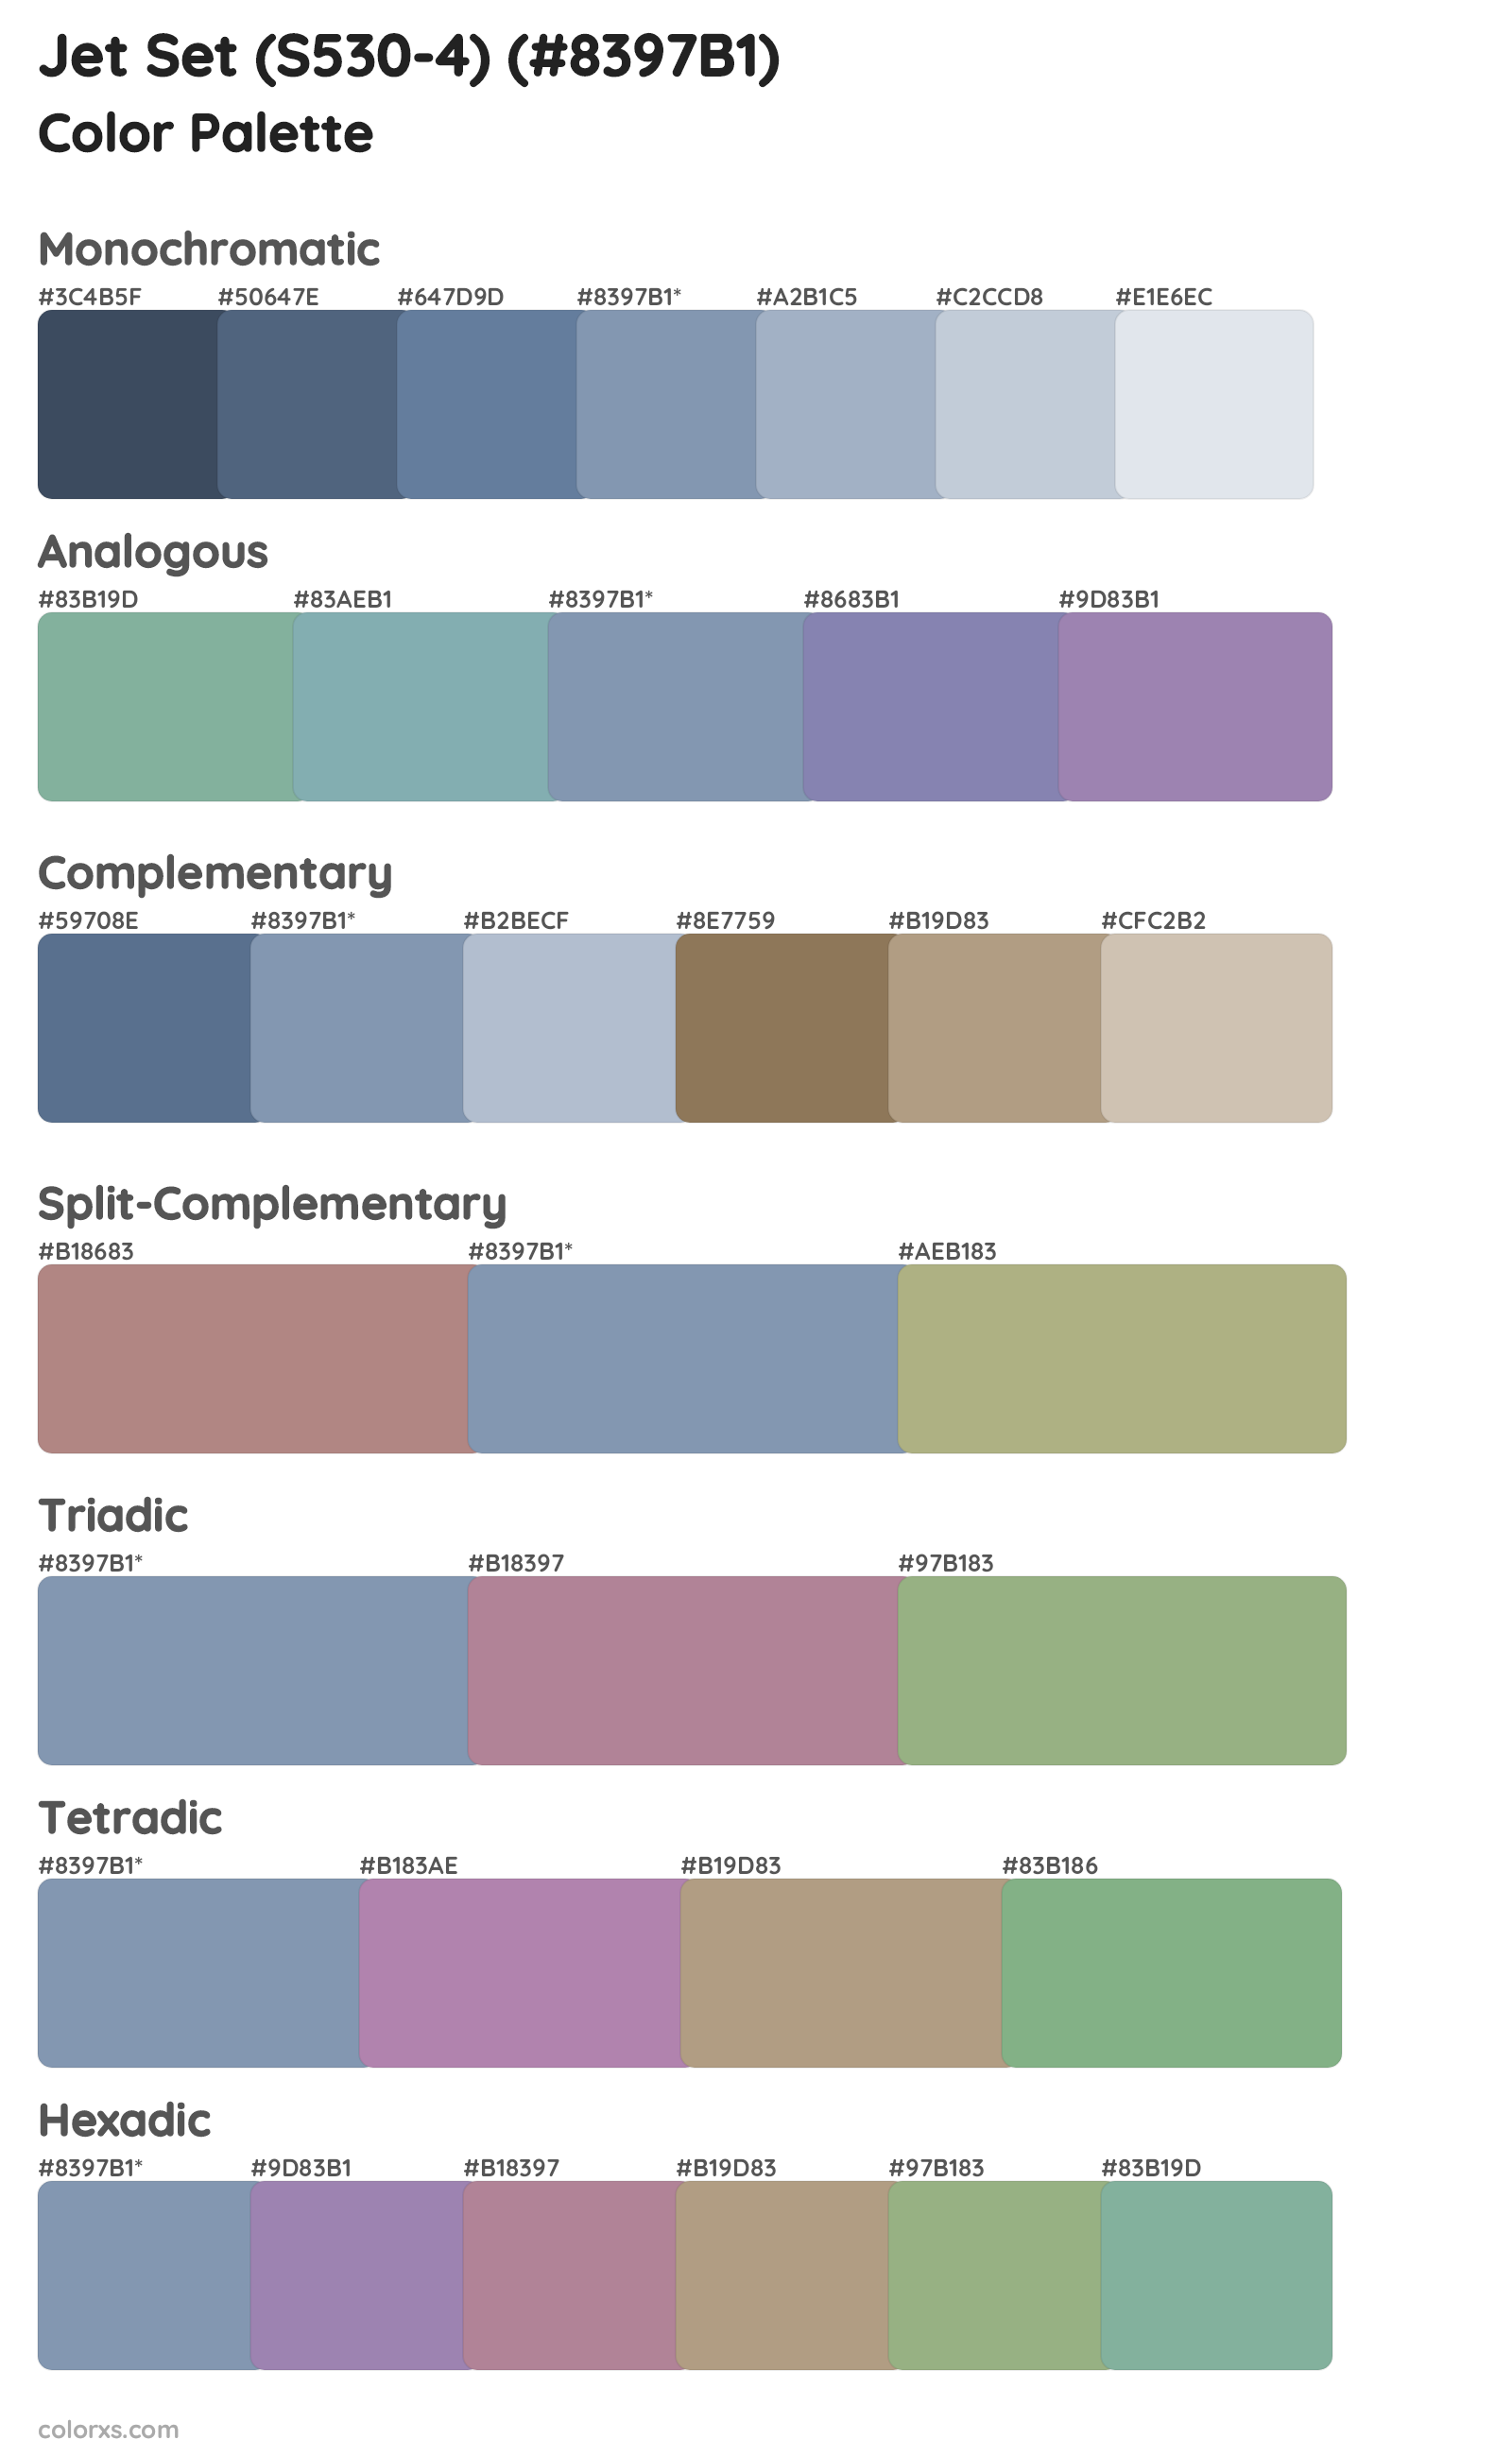 Jet Set (S530-4) Color Scheme Palettes